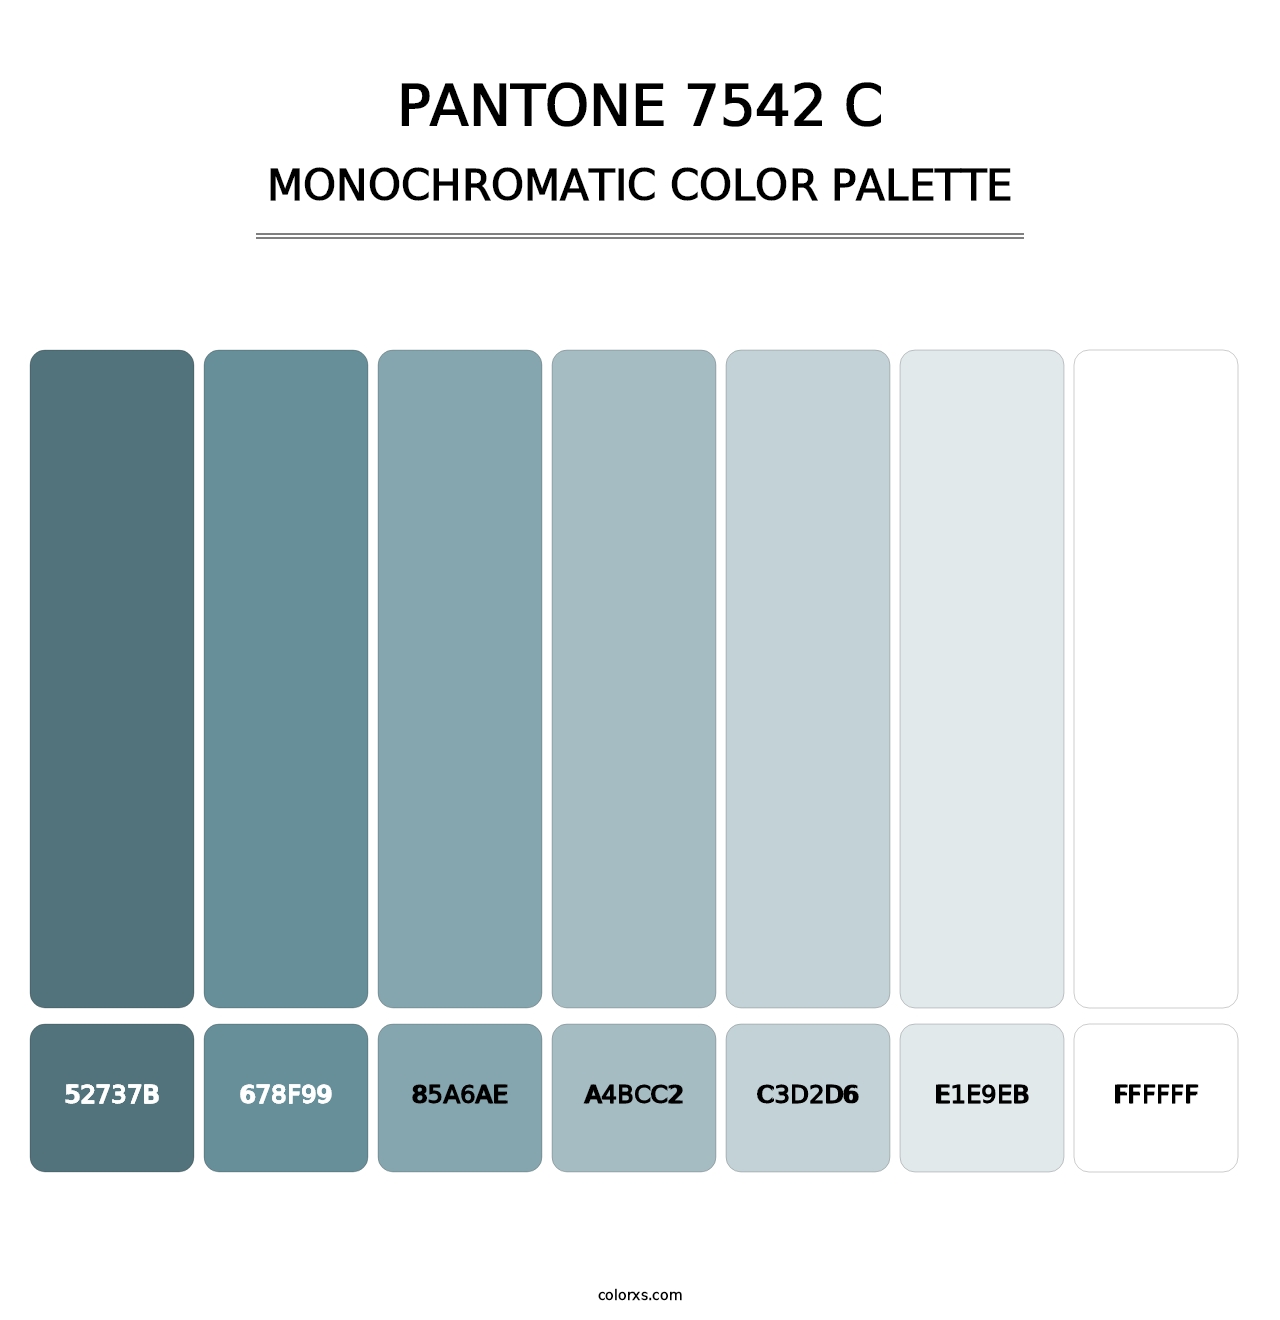 PANTONE 7542 C - Monochromatic Color Palette